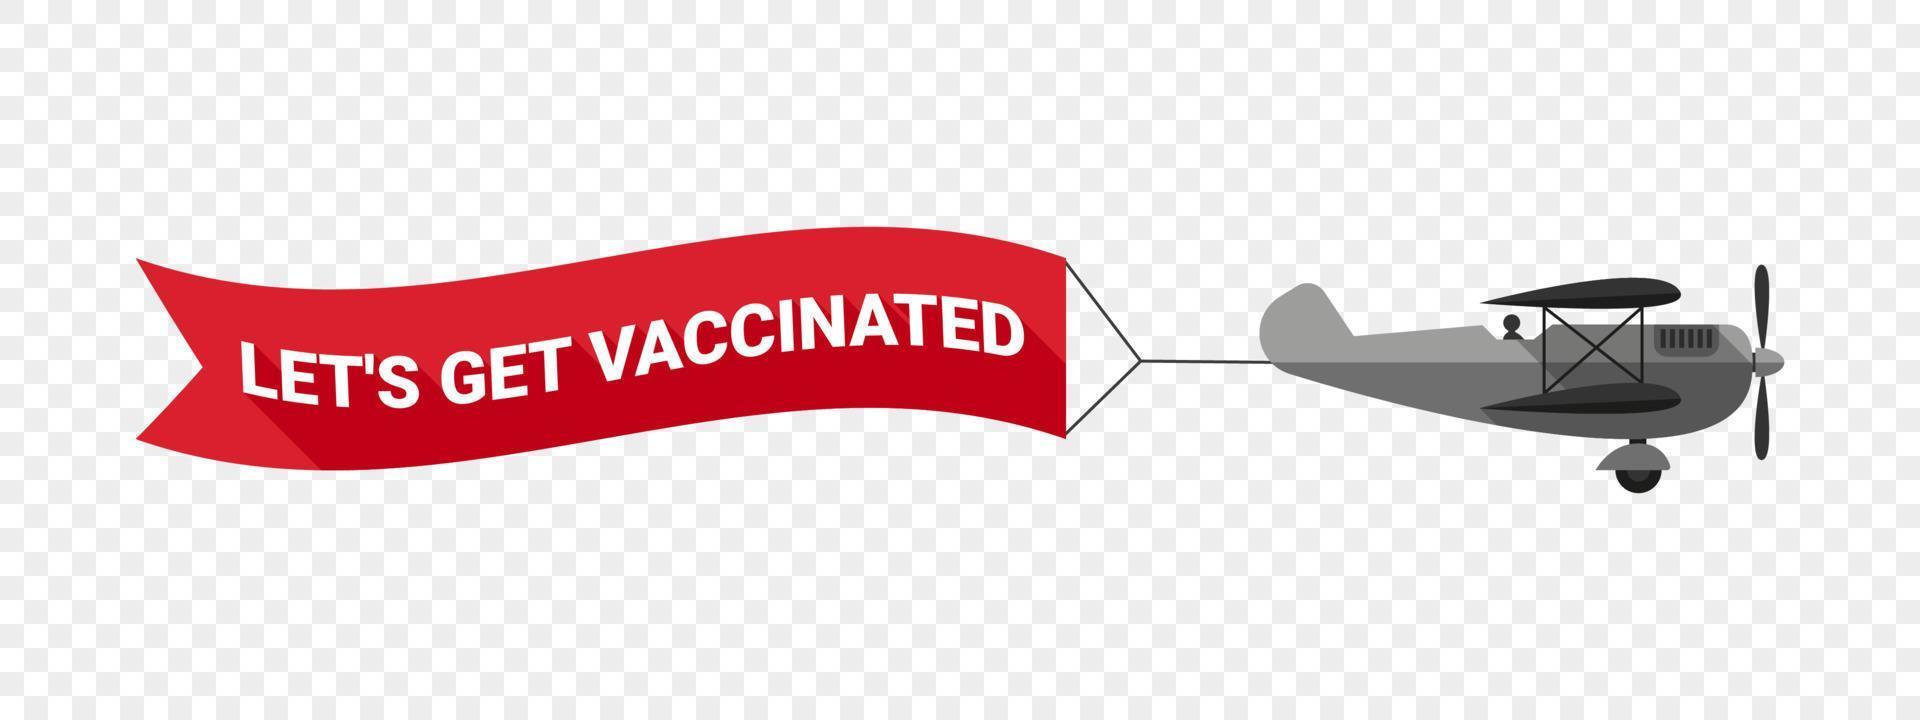 notion de vaccination. avion vintage avec bannière. une inscription appelant aux vaccinés. illustration vectorielle vecteur